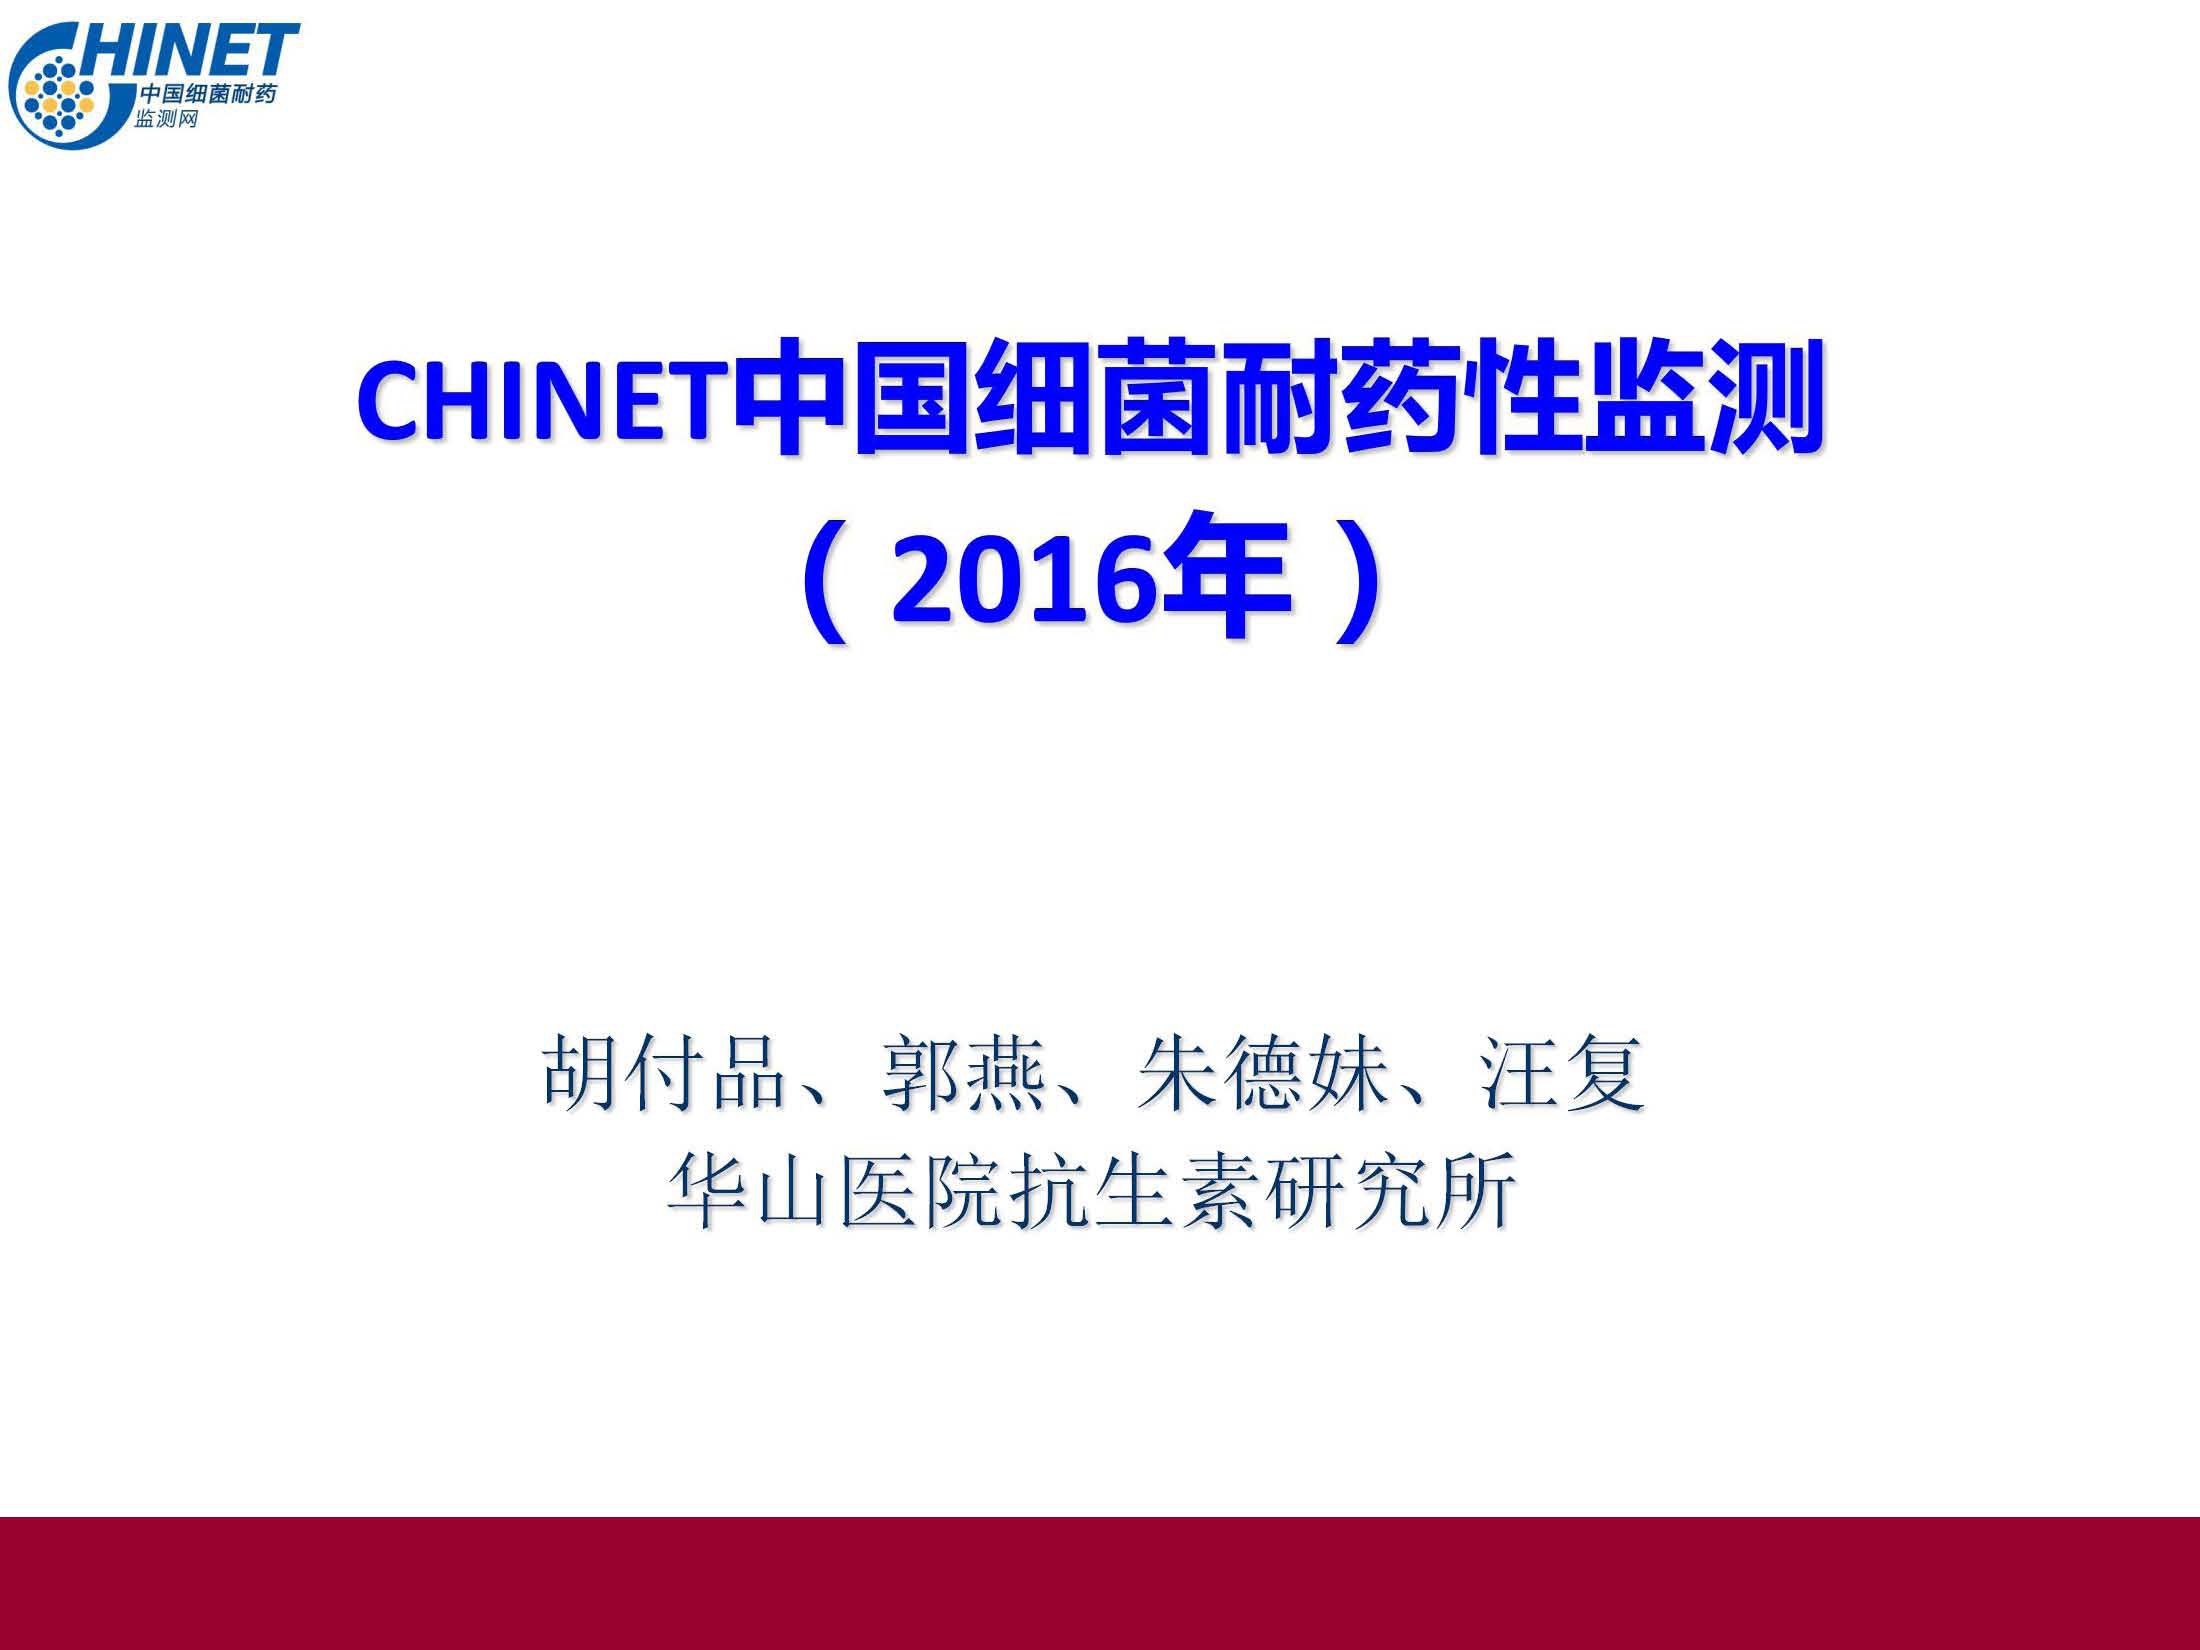 CHINET2016年细菌耐药监测结果q2017-4-2-1 1.jpg